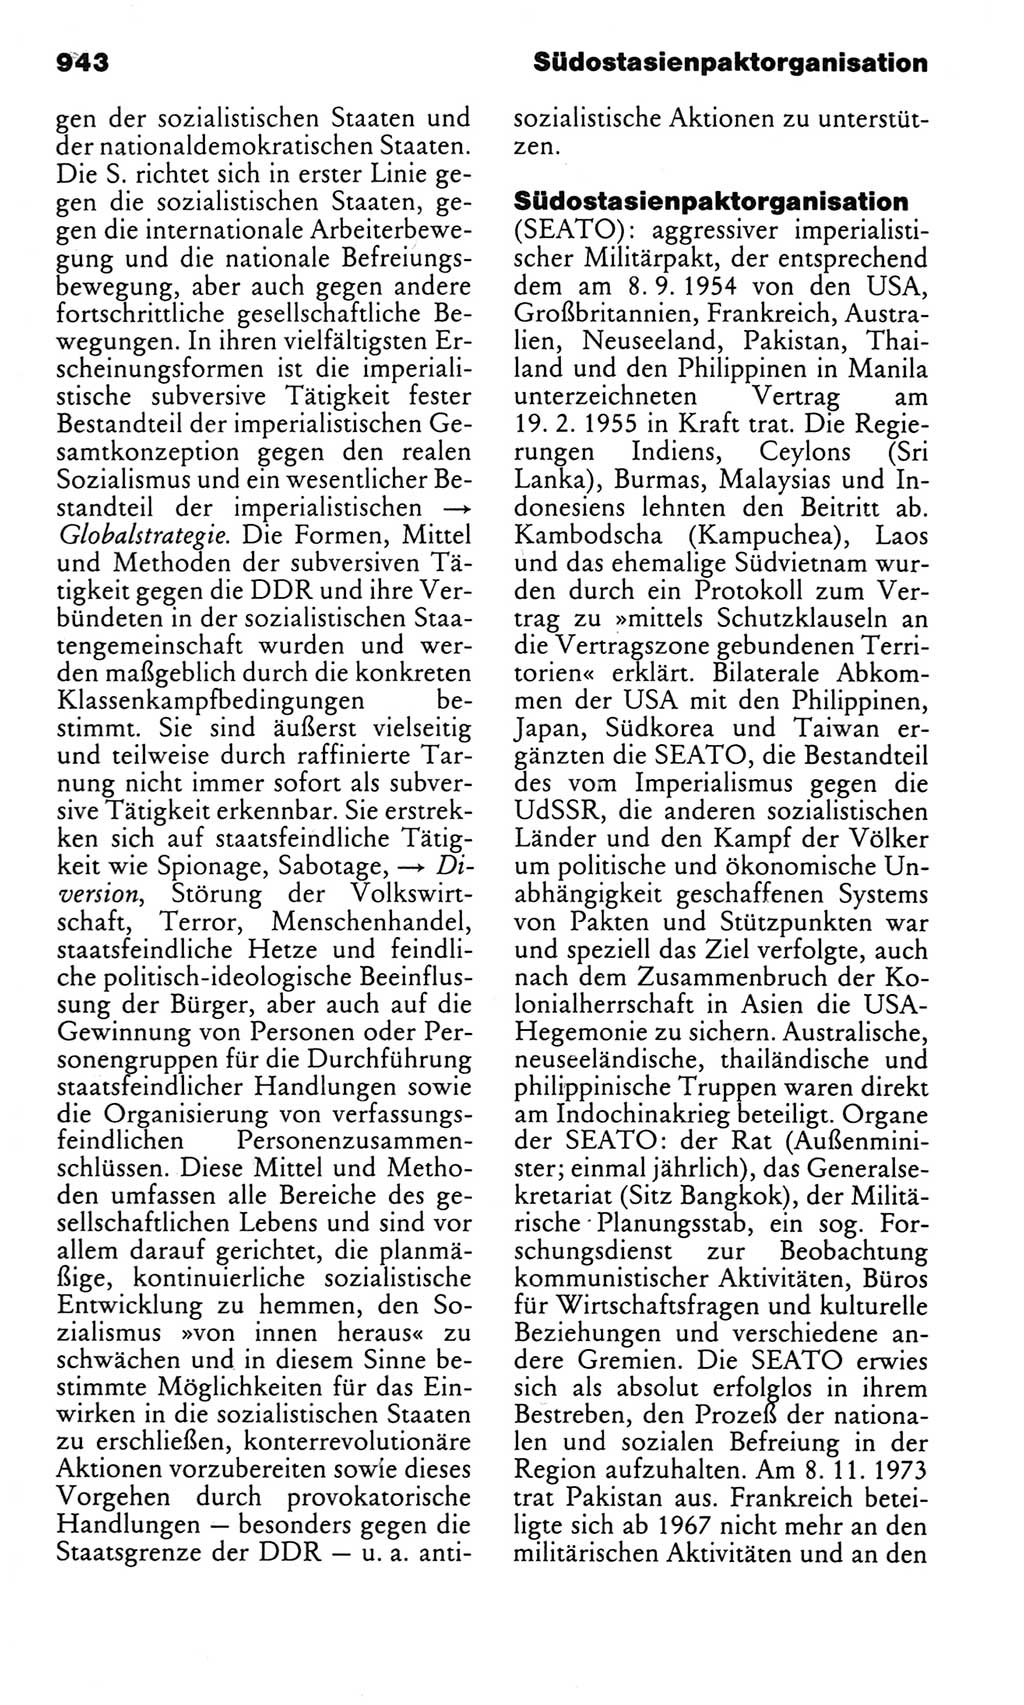 Kleines politisches Wörterbuch [Deutsche Demokratische Republik (DDR)] 1983, Seite 943 (Kl. pol. Wb. DDR 1983, S. 943)